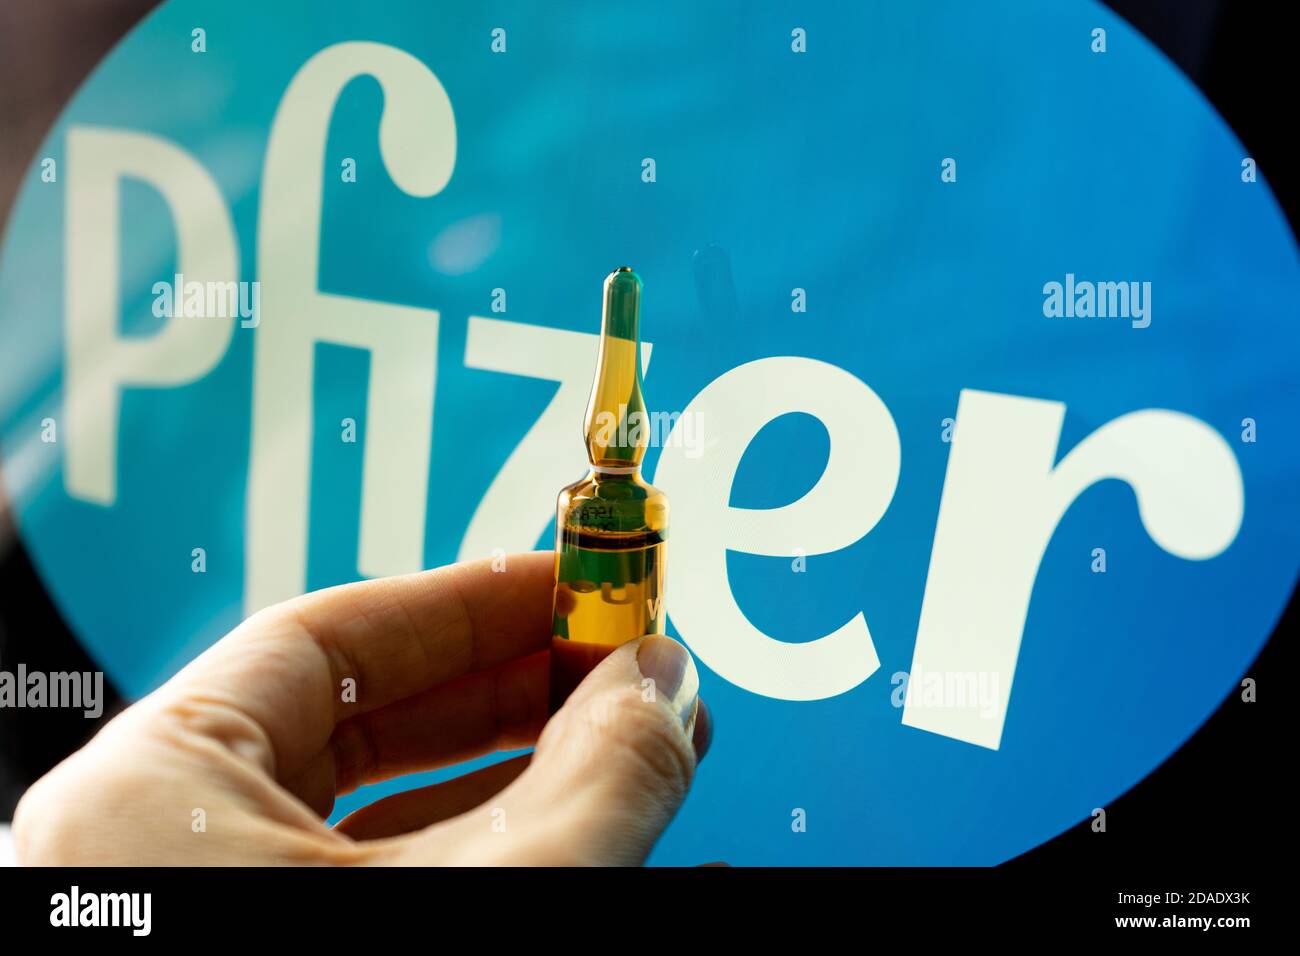 Pfizer coronavirus vaccine pharmaceutical corporation. Pfizer logo with hand holding vaccine. Stock Photo